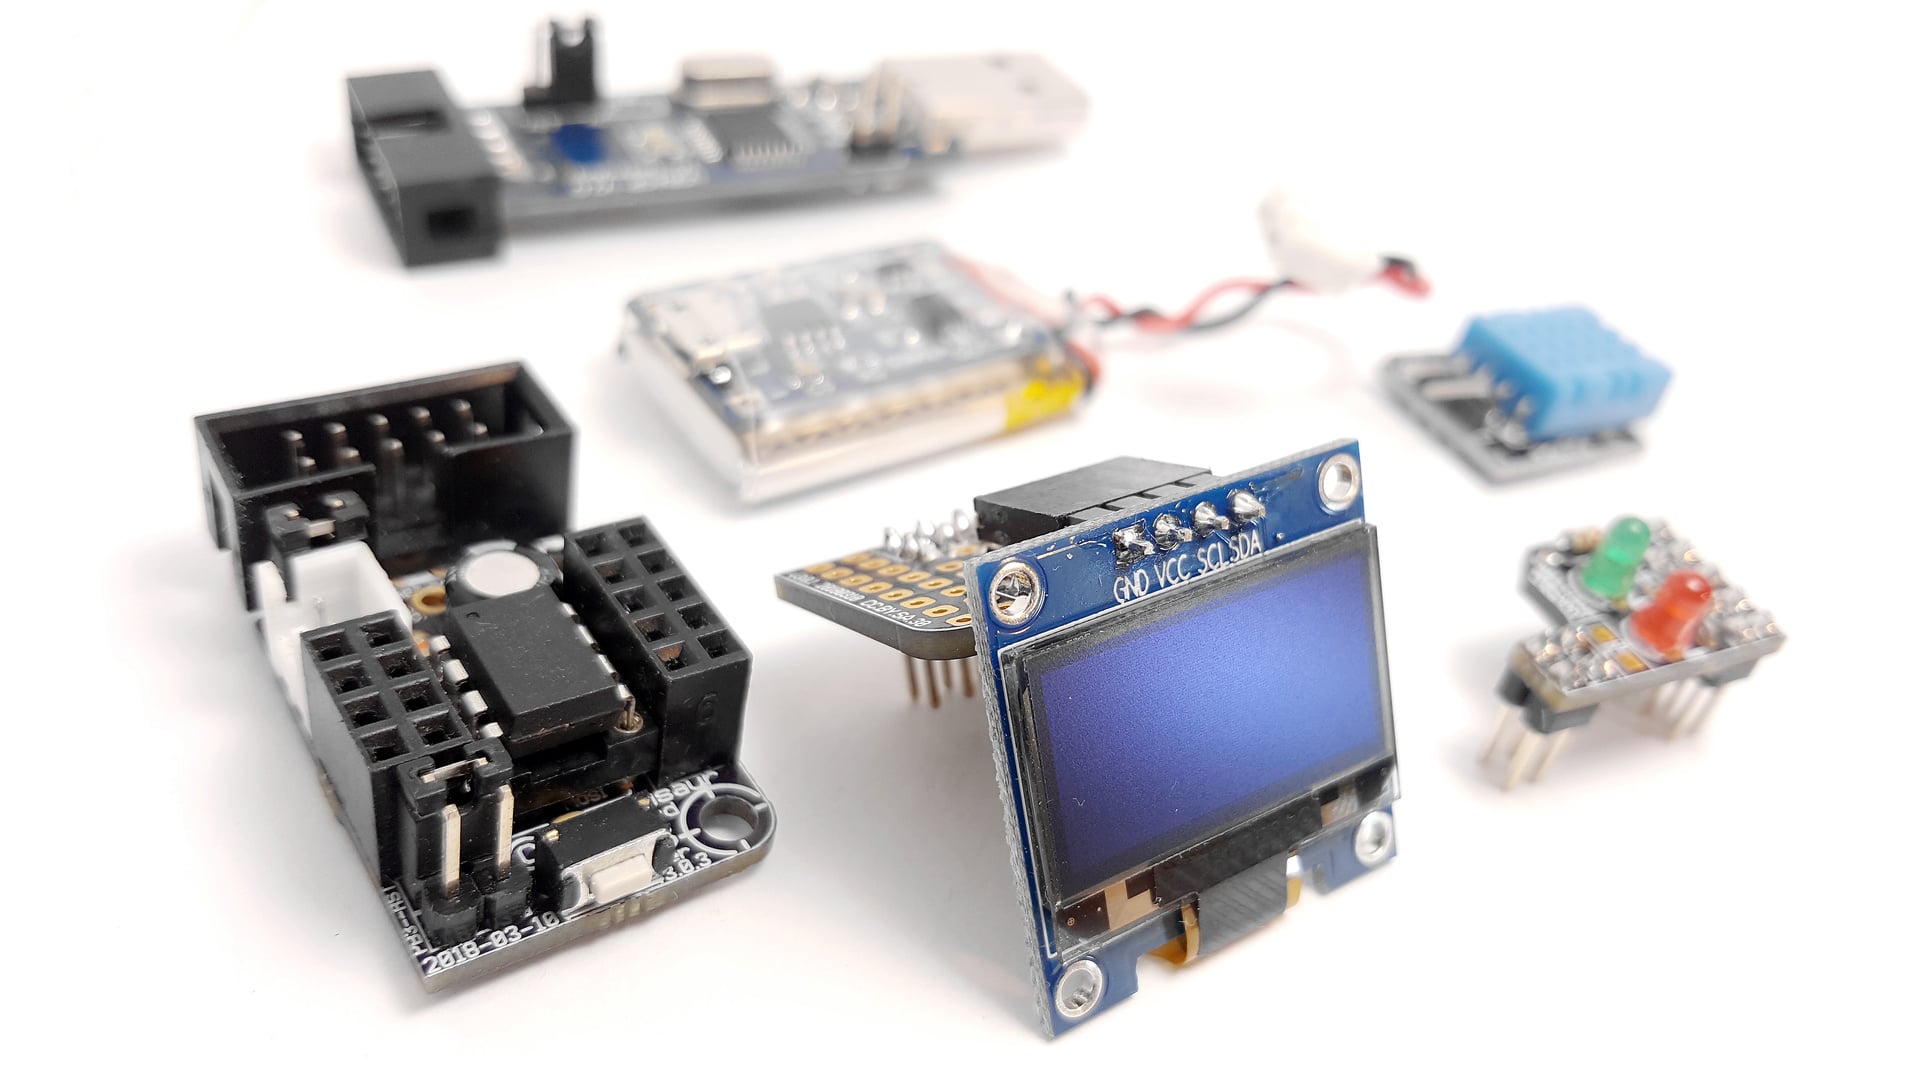 Kit de pantalla OLED para microcontroladores